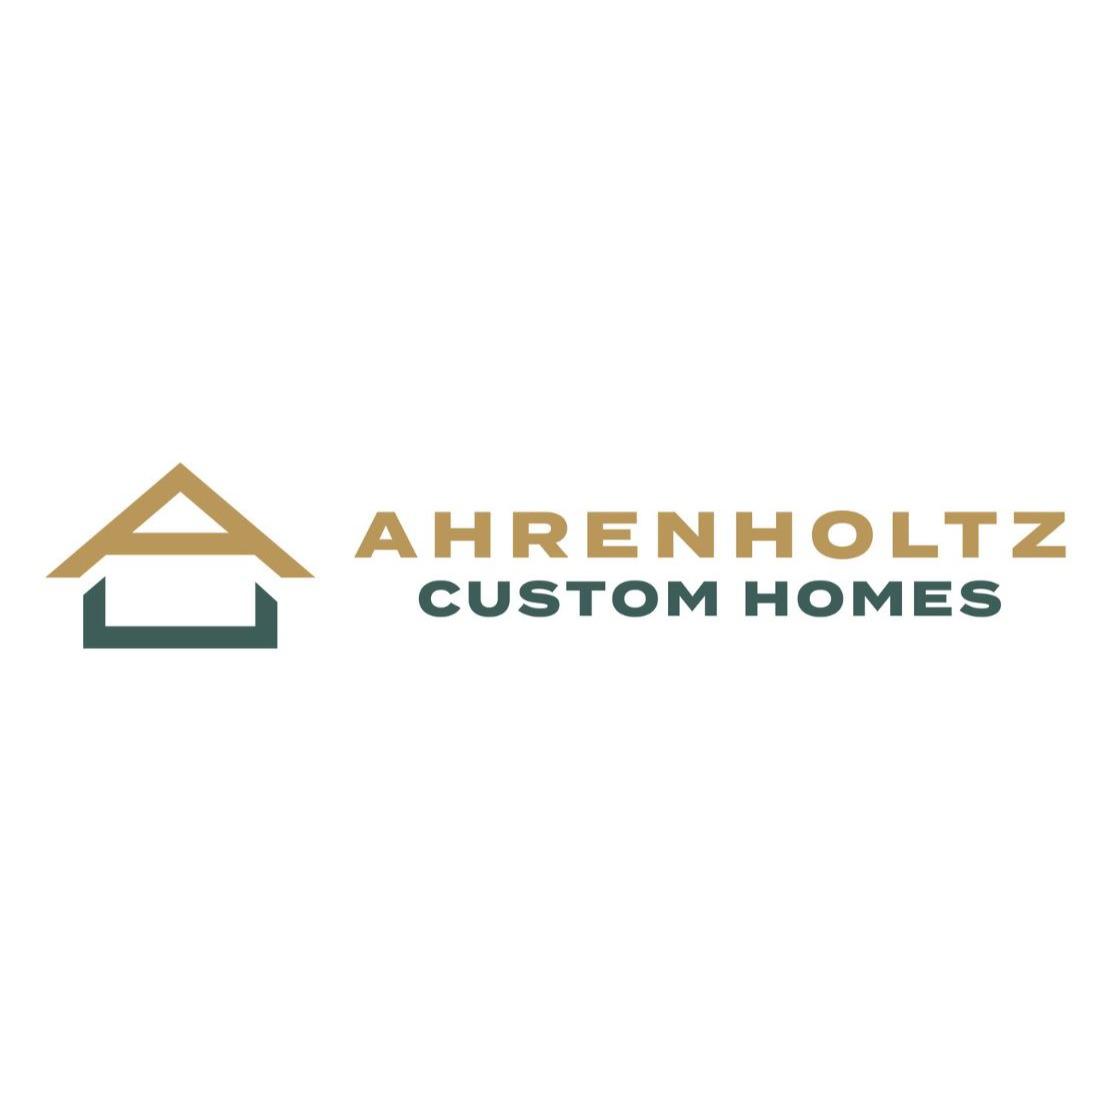 Ahrenholtz Custom Homes - Siloam Springs, AR 72761 - (479)228-8367 | ShowMeLocal.com